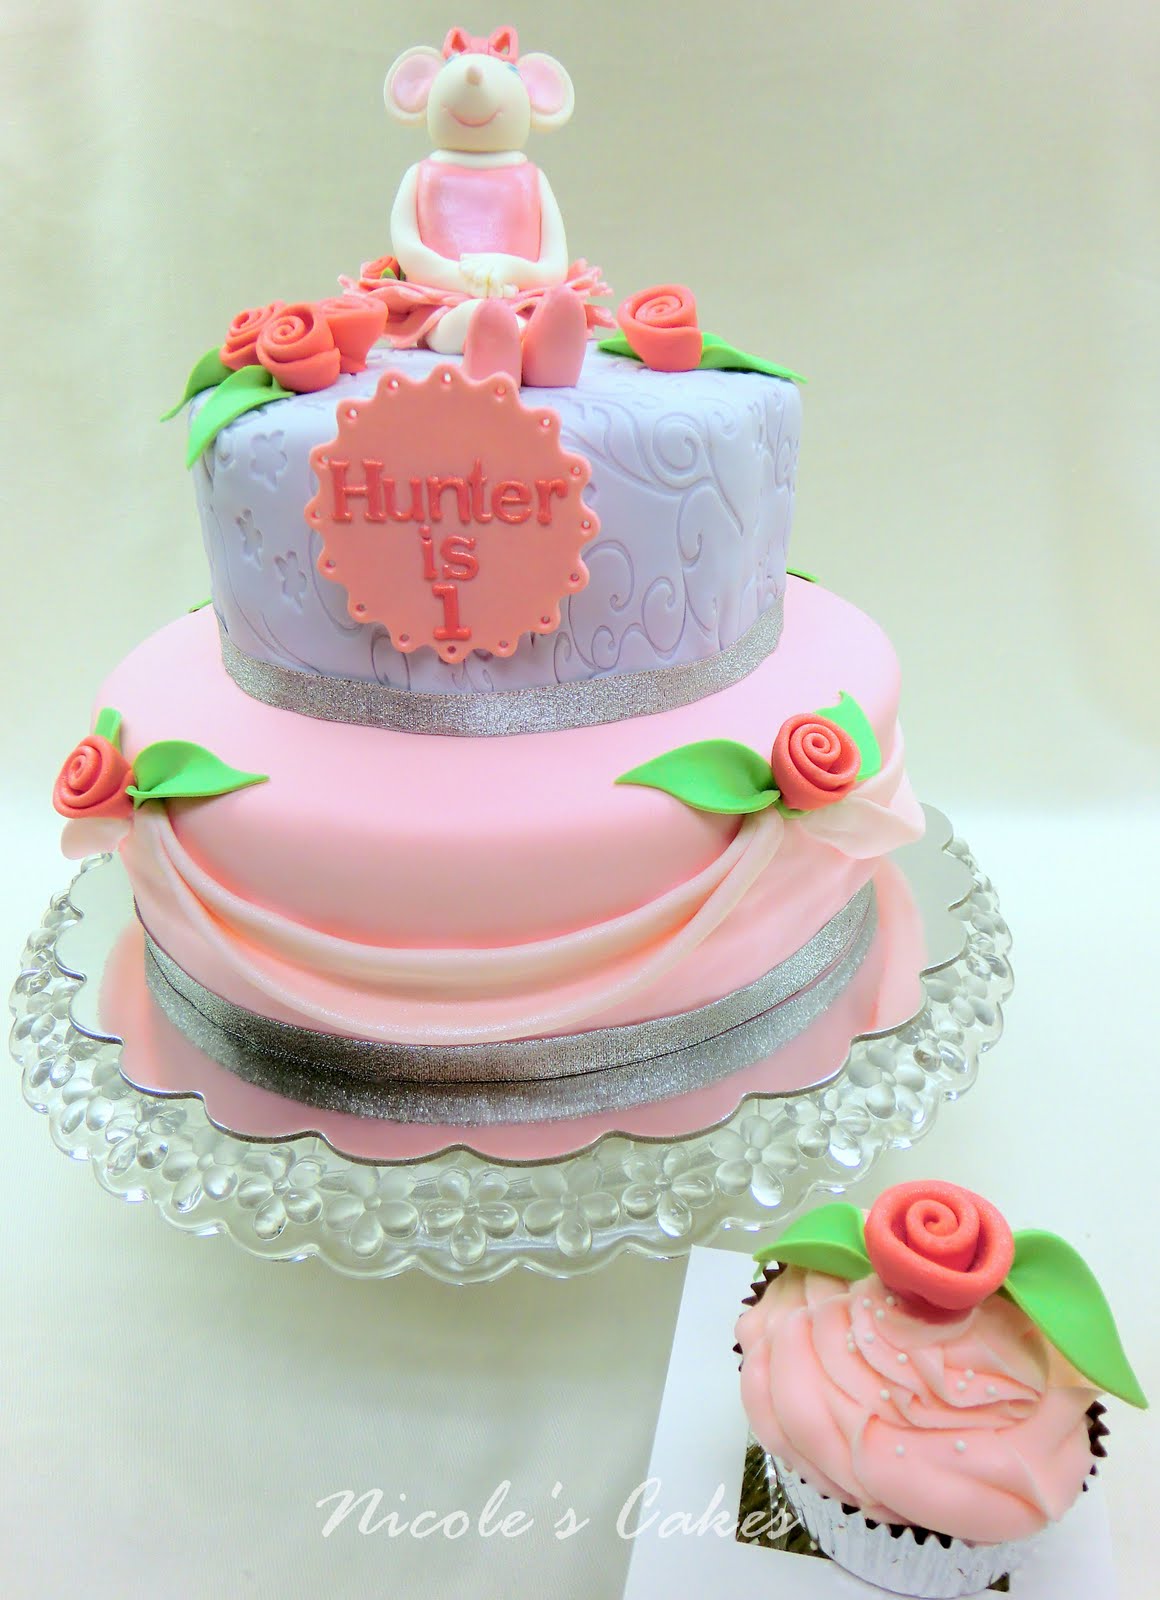 Louis Vuitton fashion themed birthday cake  Birthday cakes for women, 28th  birthday cake, Beautiful birthday cakes